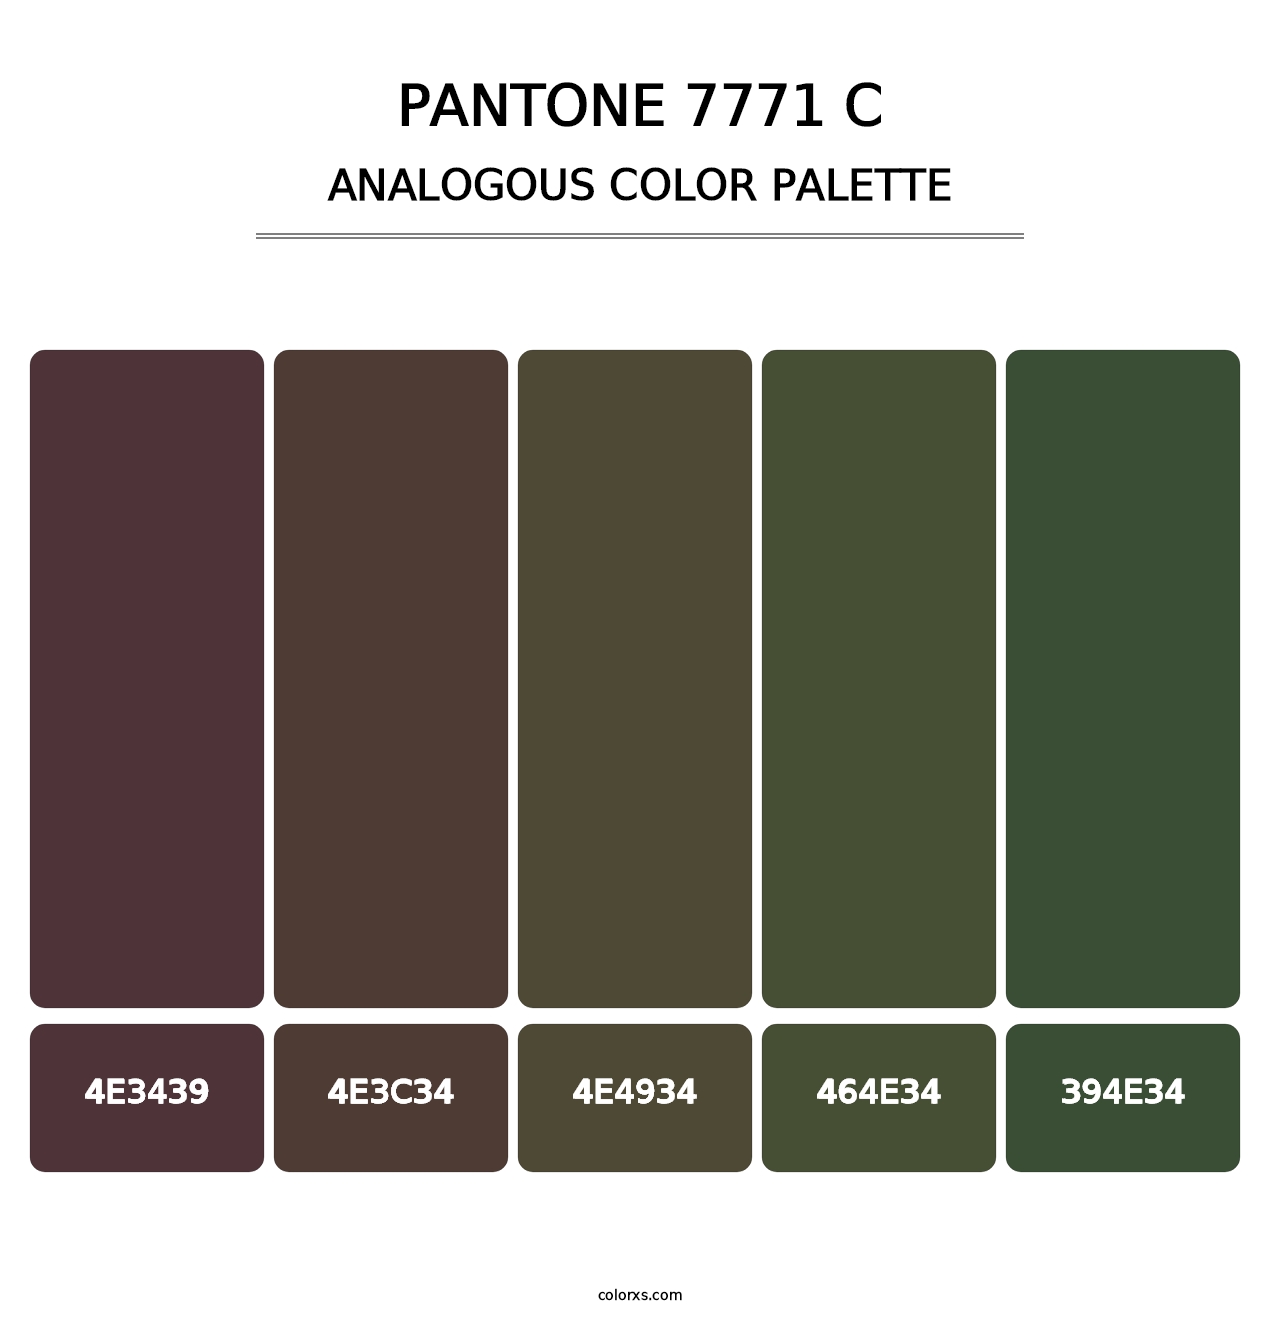 PANTONE 7771 C - Analogous Color Palette